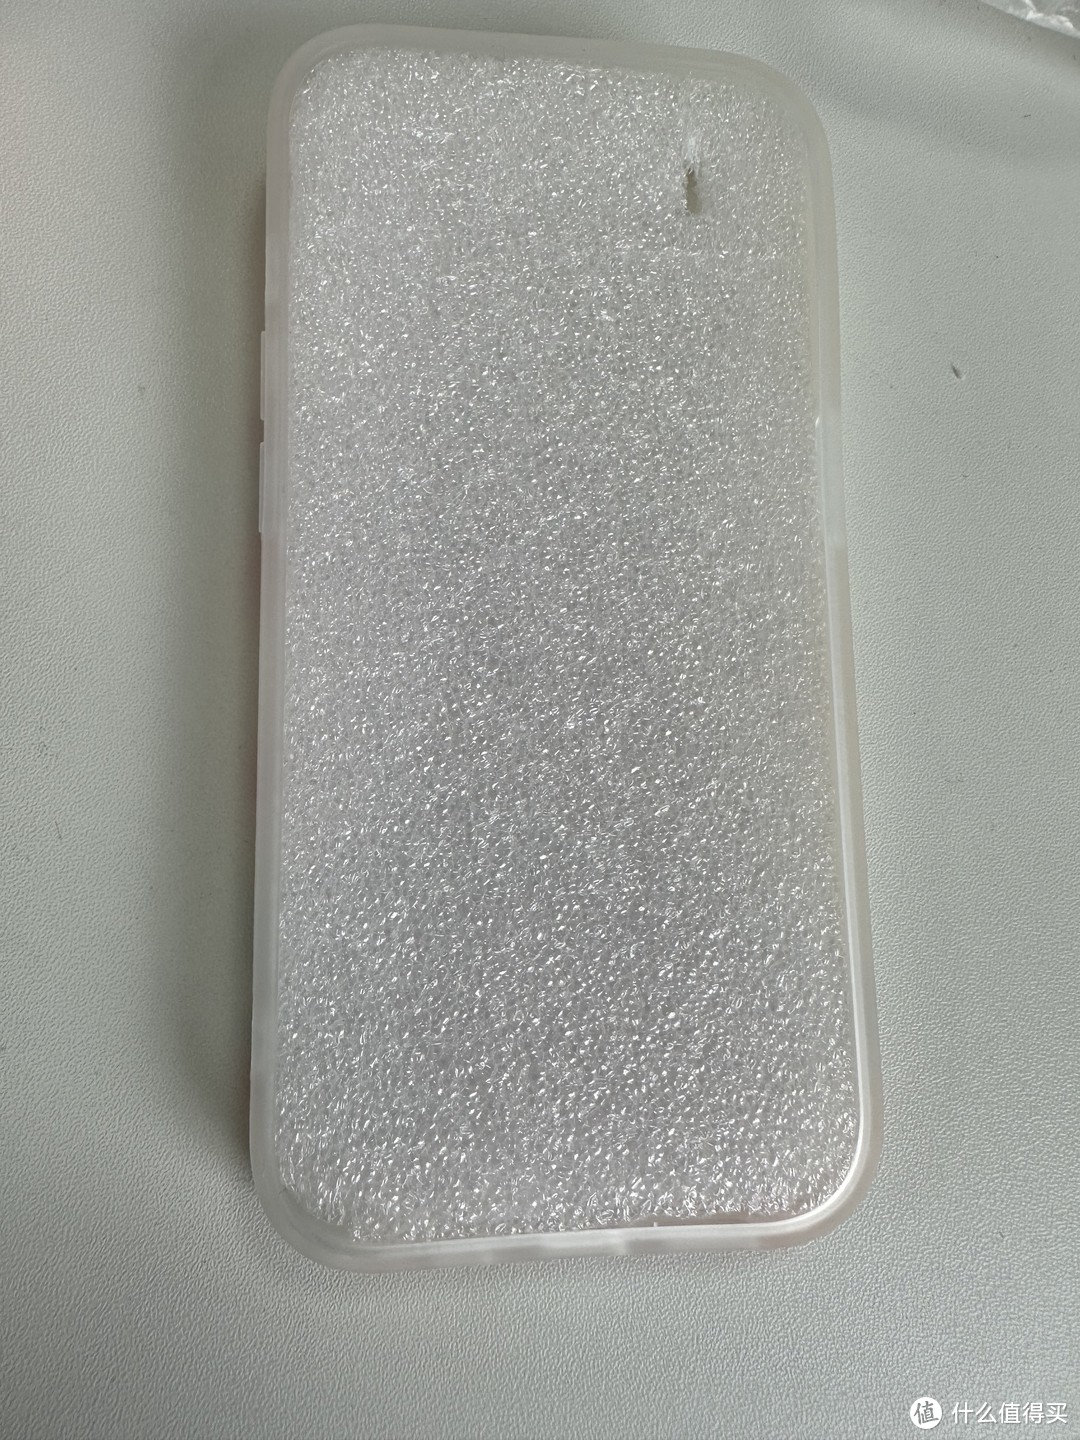 手机壳仅保护？更是个性和心情的表达！看看80/90后的iPhone机主用什么手机壳，你又是用的哪种呢？